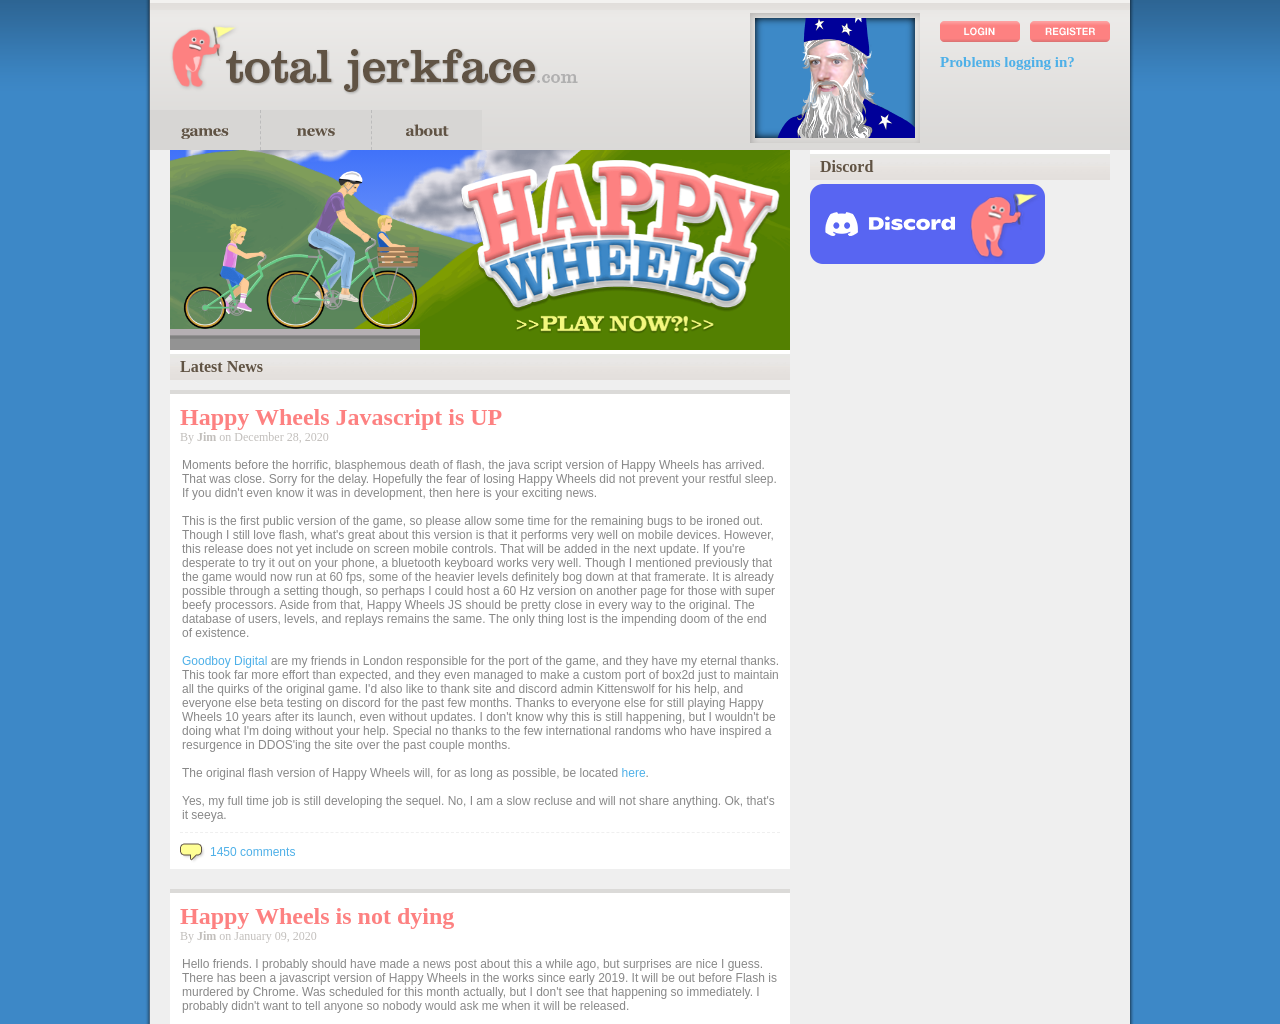 www.totaljerkface.com